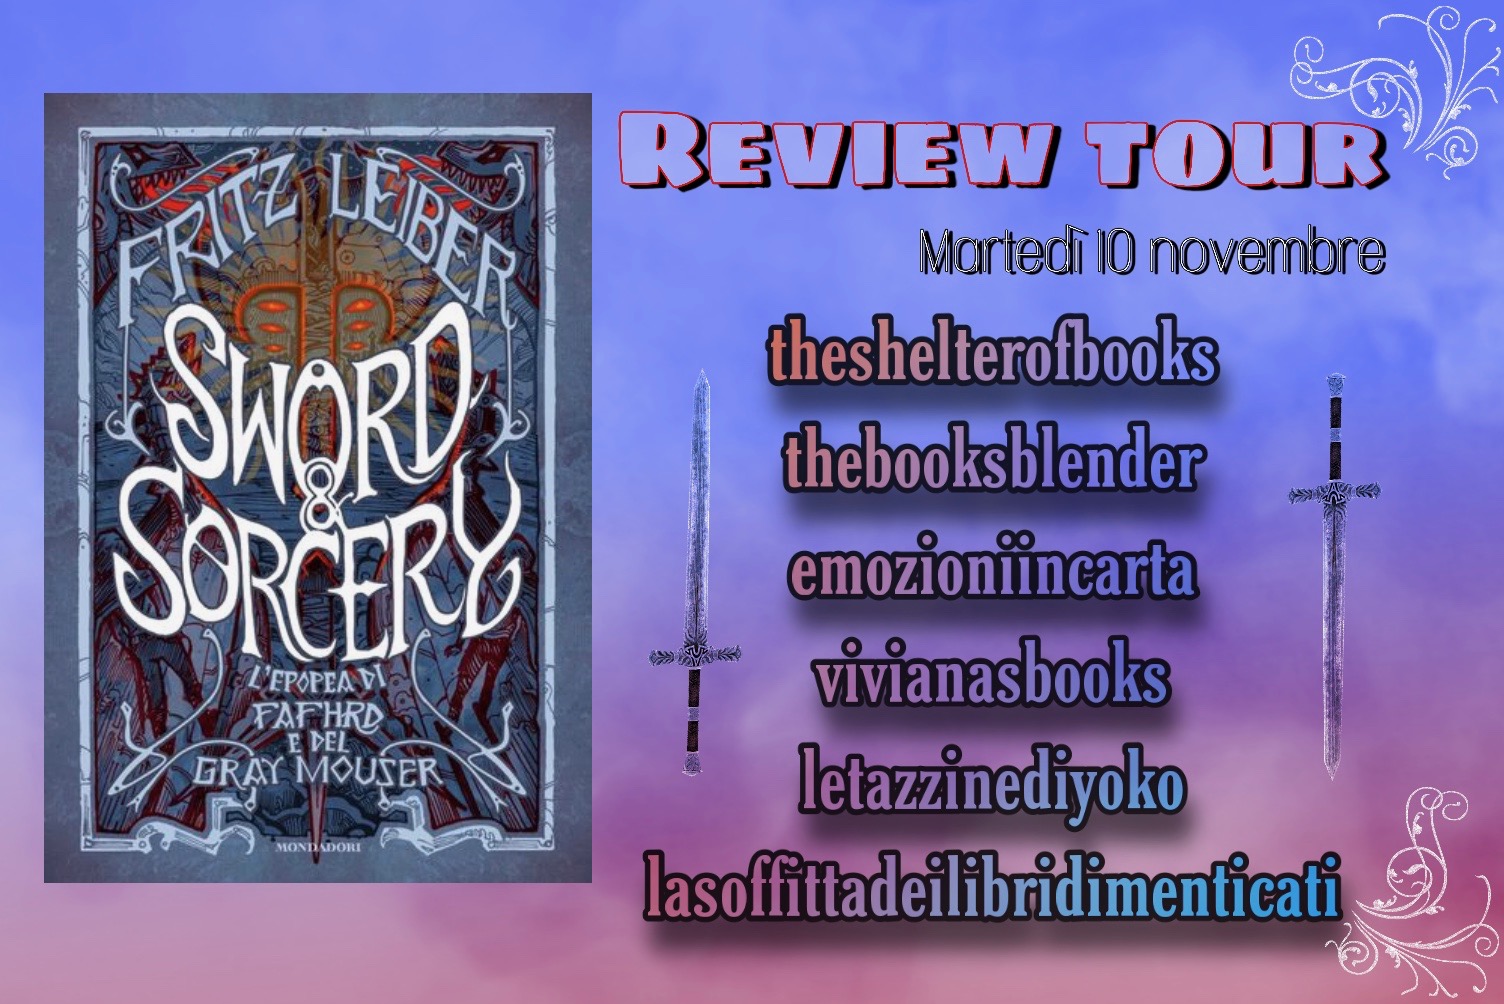 Review Tour: Sword & Sorcery – L’epopea di Fafhrd e del Gray Mouser